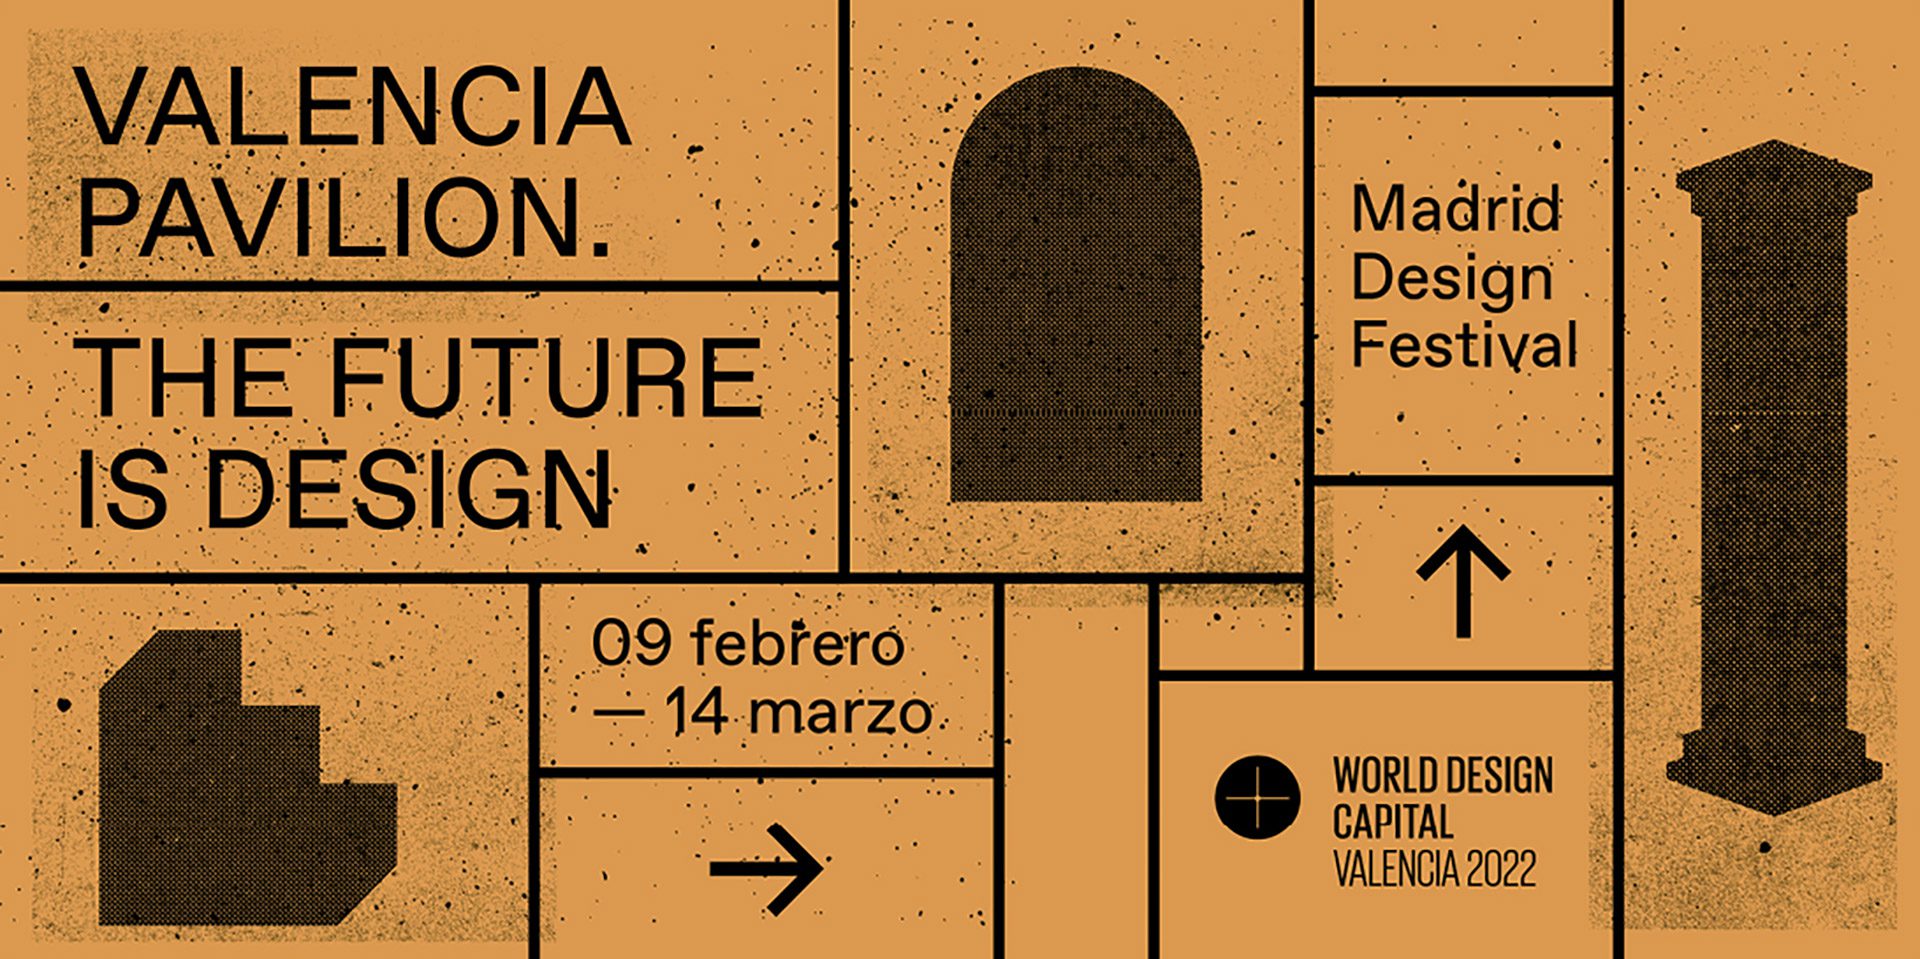 Vondom in Madrid design festival